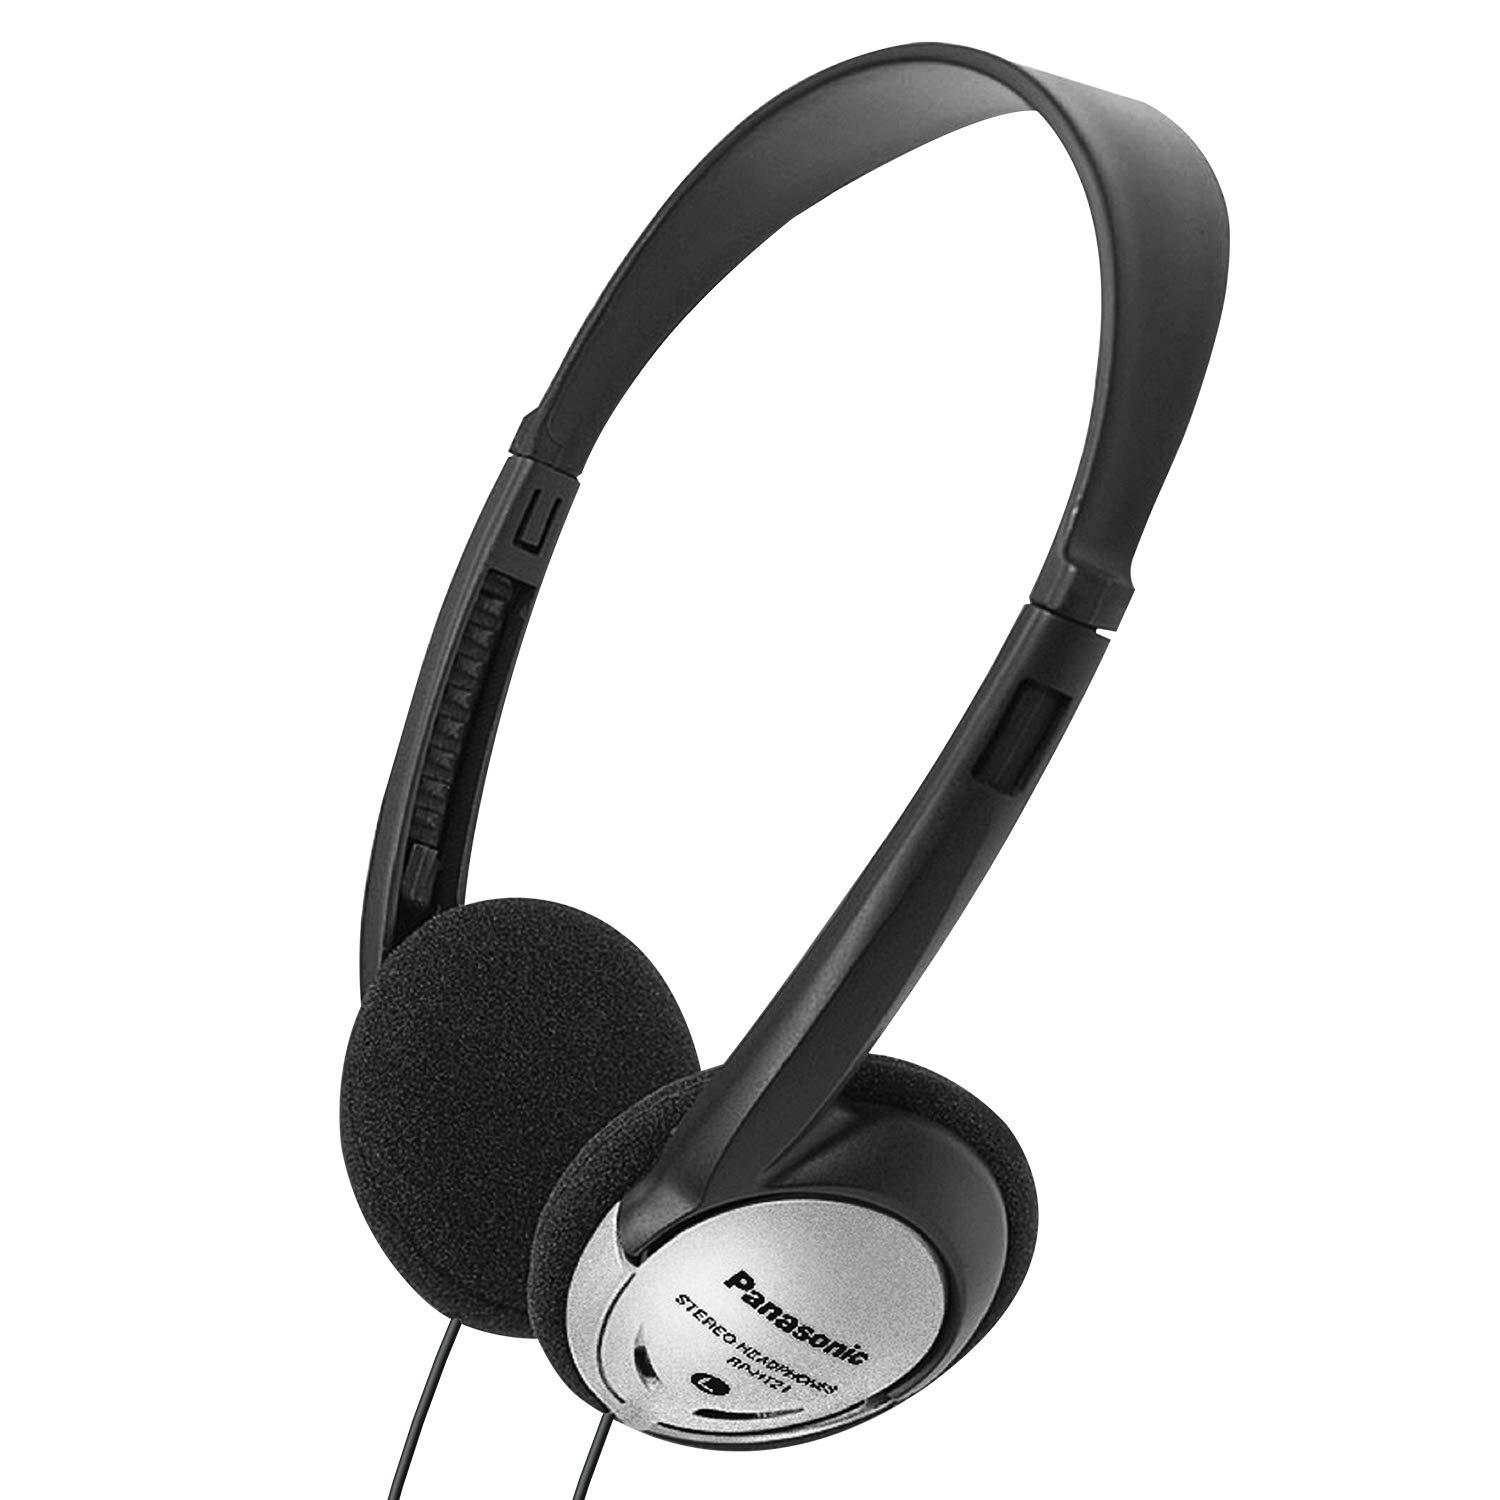 Panasonic 头戴式耳机，带 XBS 的贴耳式轻型耳机，可提供超重低音和清晰自然的声音，适用于手机和笔记...